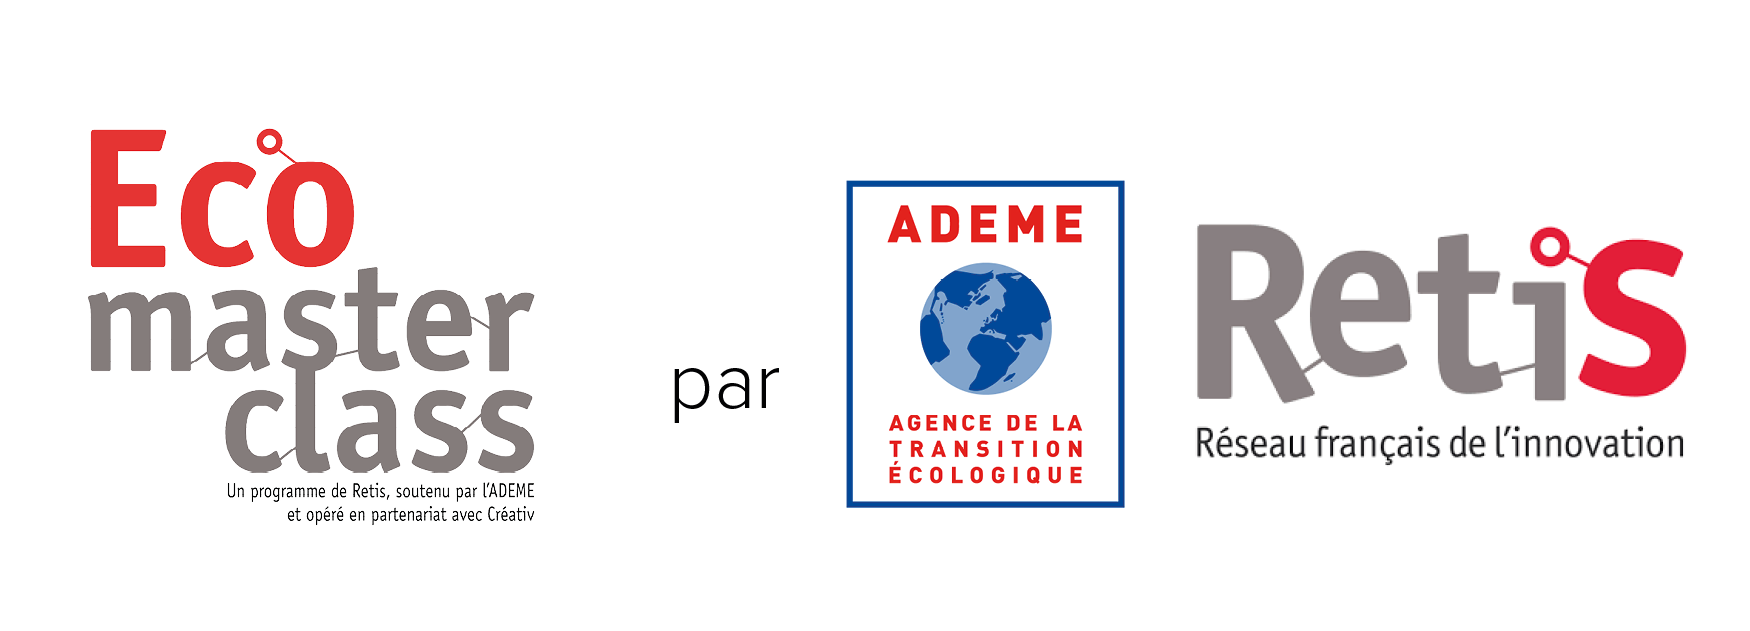 logo Réseau des entreprises du programme ECOMASTERCLASS ADEME RETIS